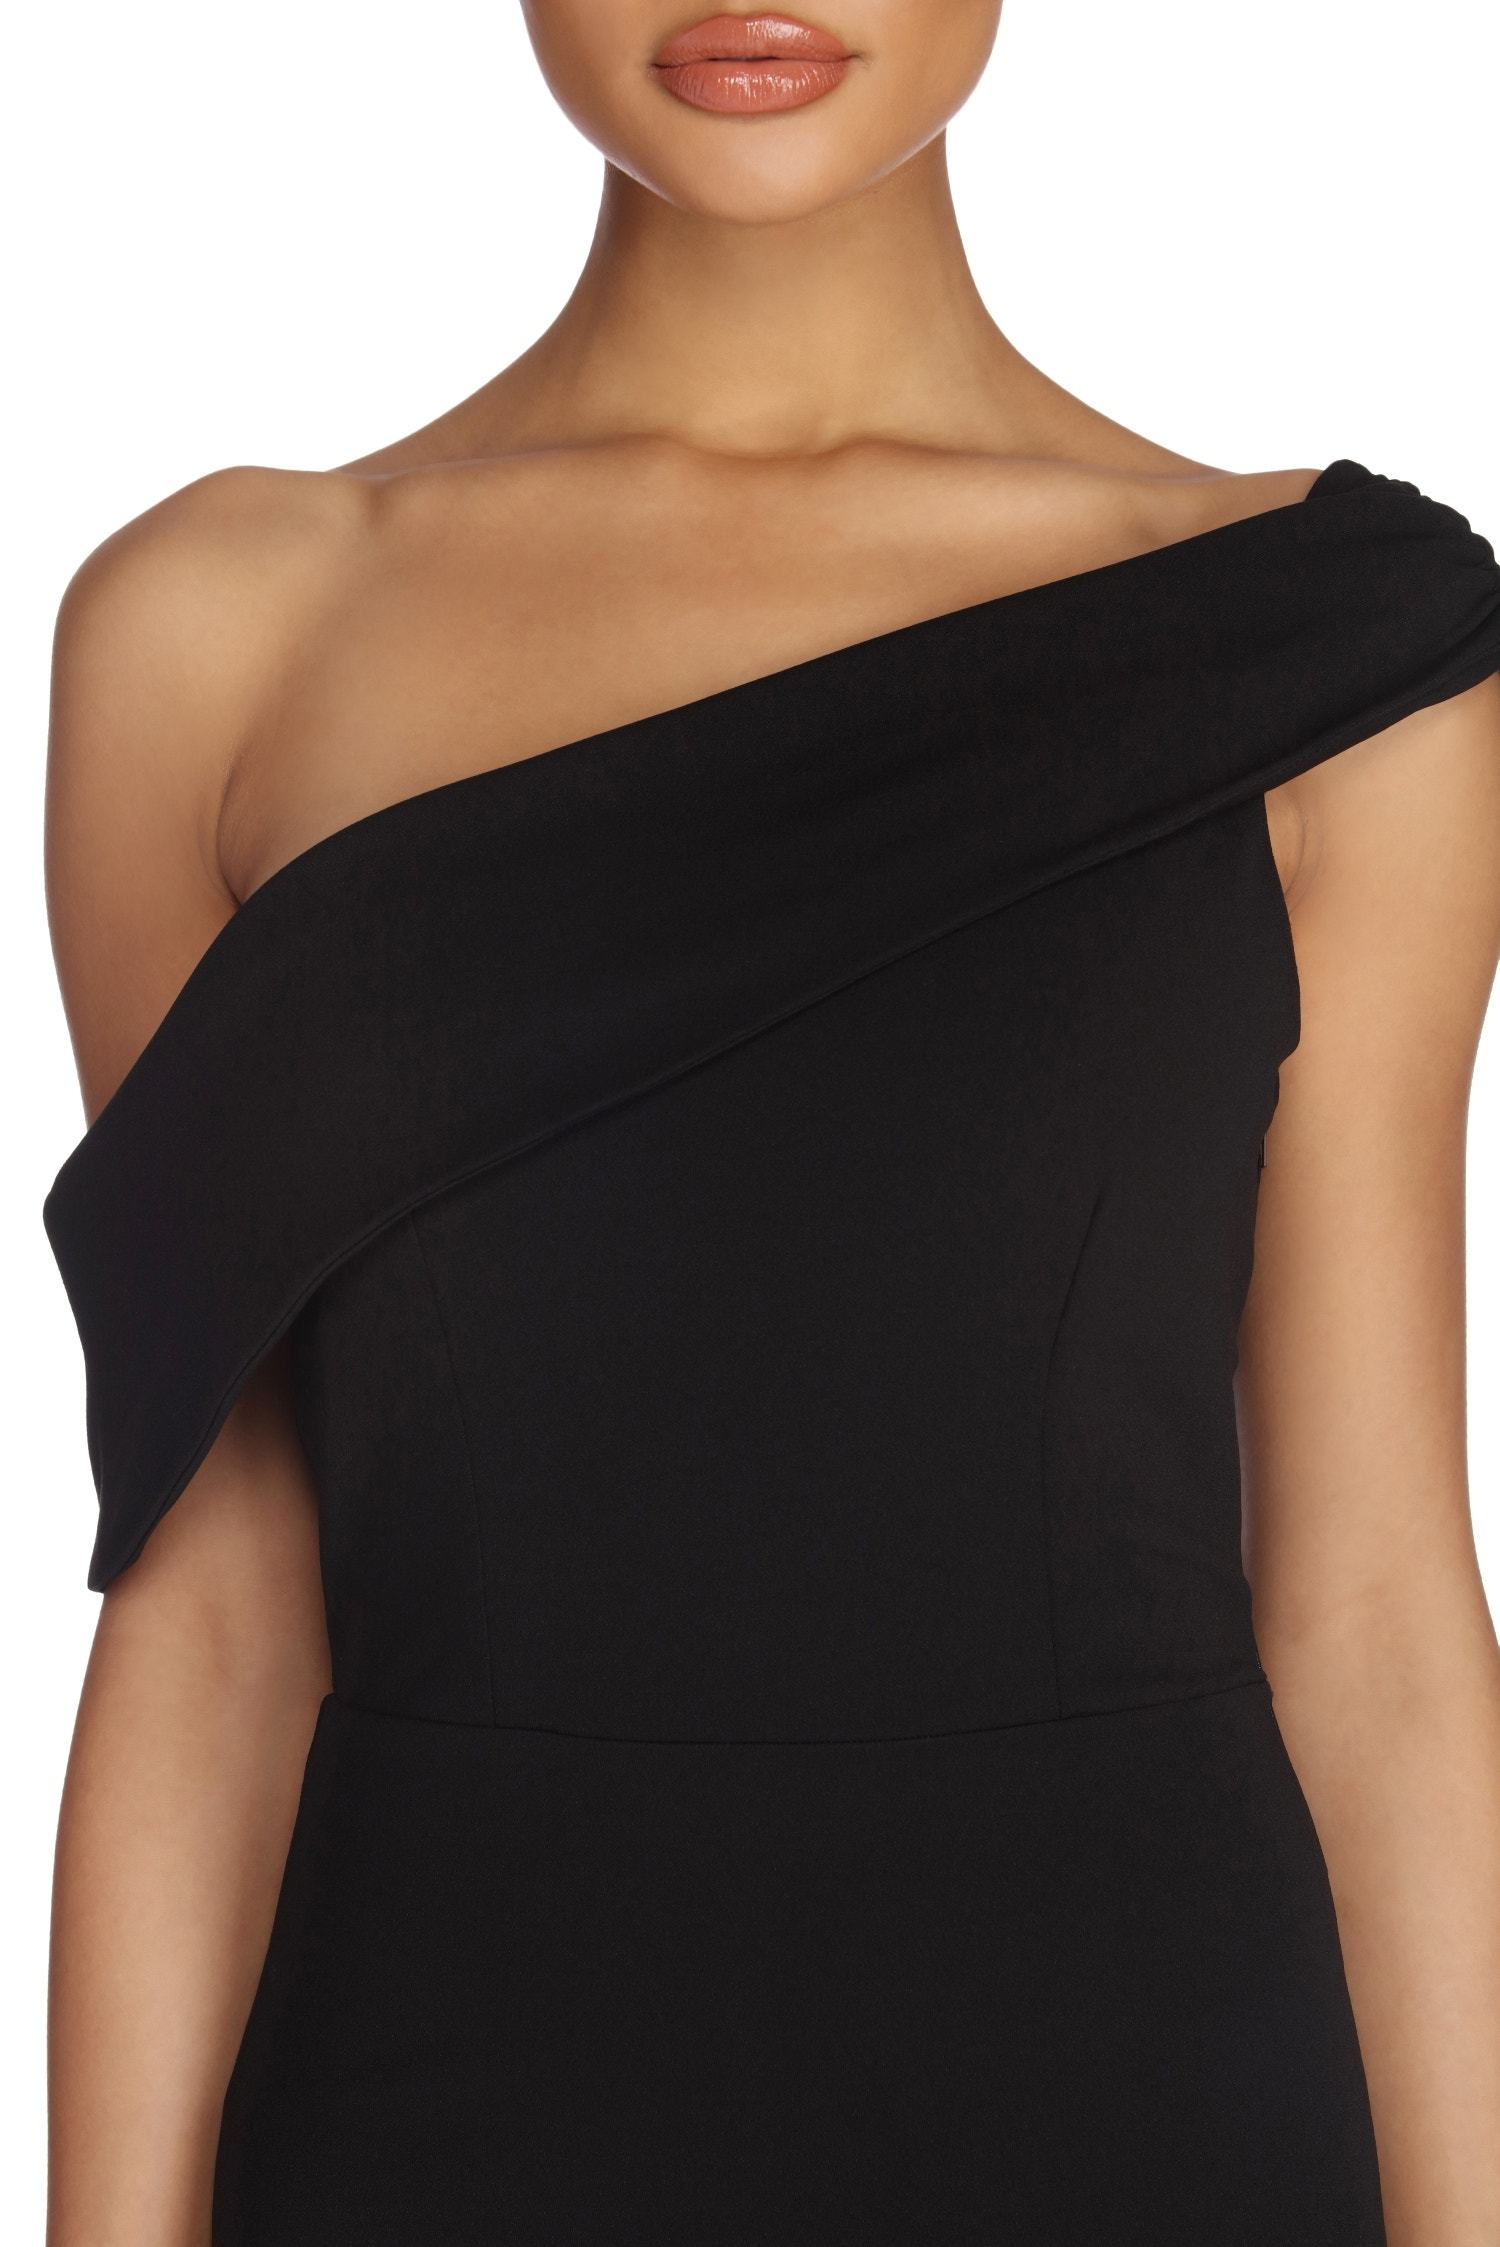 Althea Formal One Shoulder Dress